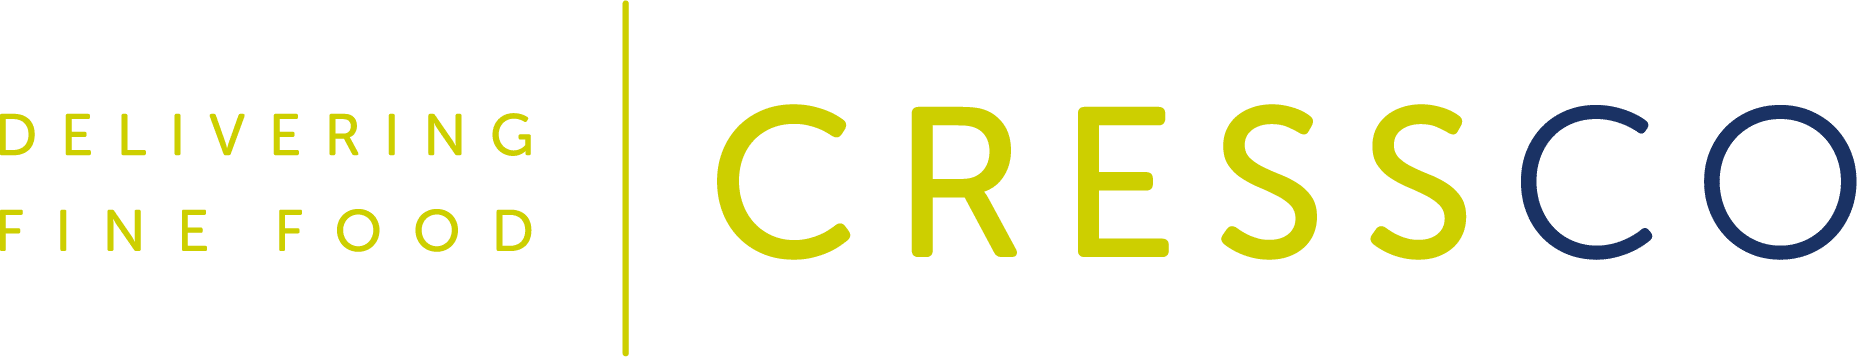 Cress Company logo